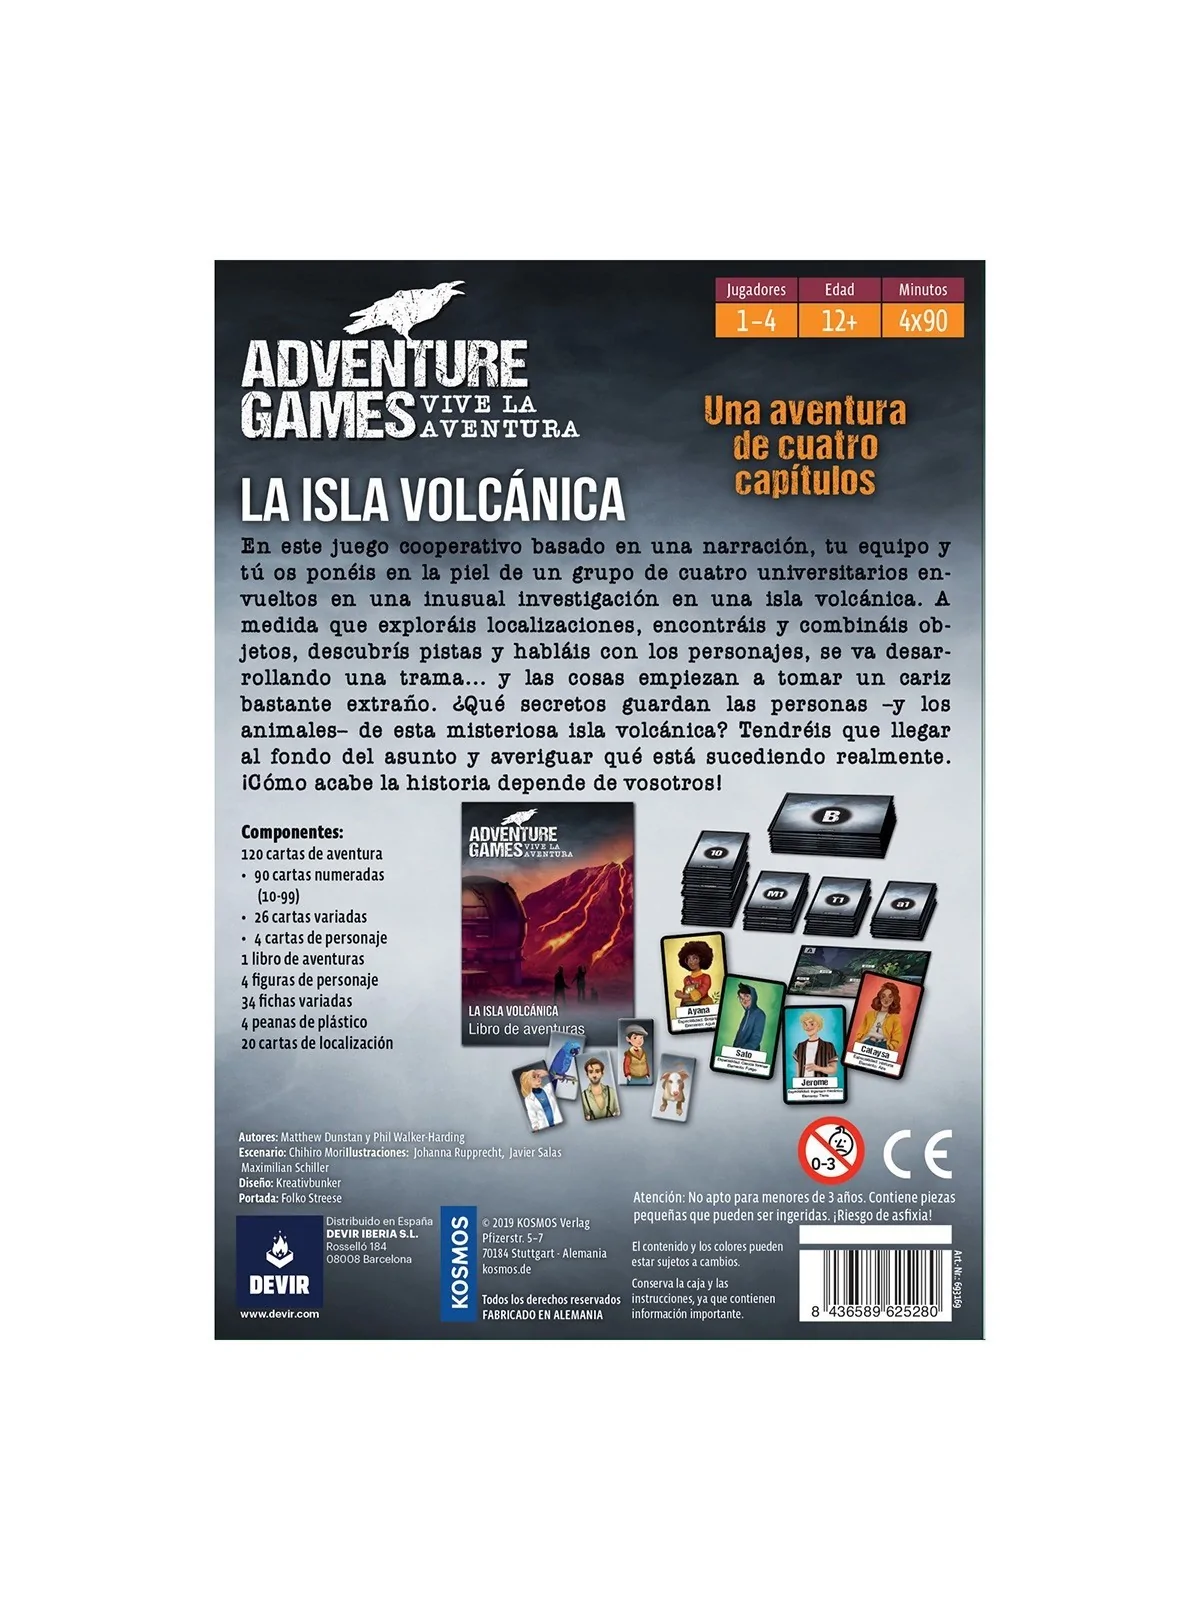 Comprar Adventure Games: La Isla Volcánica barato al mejor precio 22,5